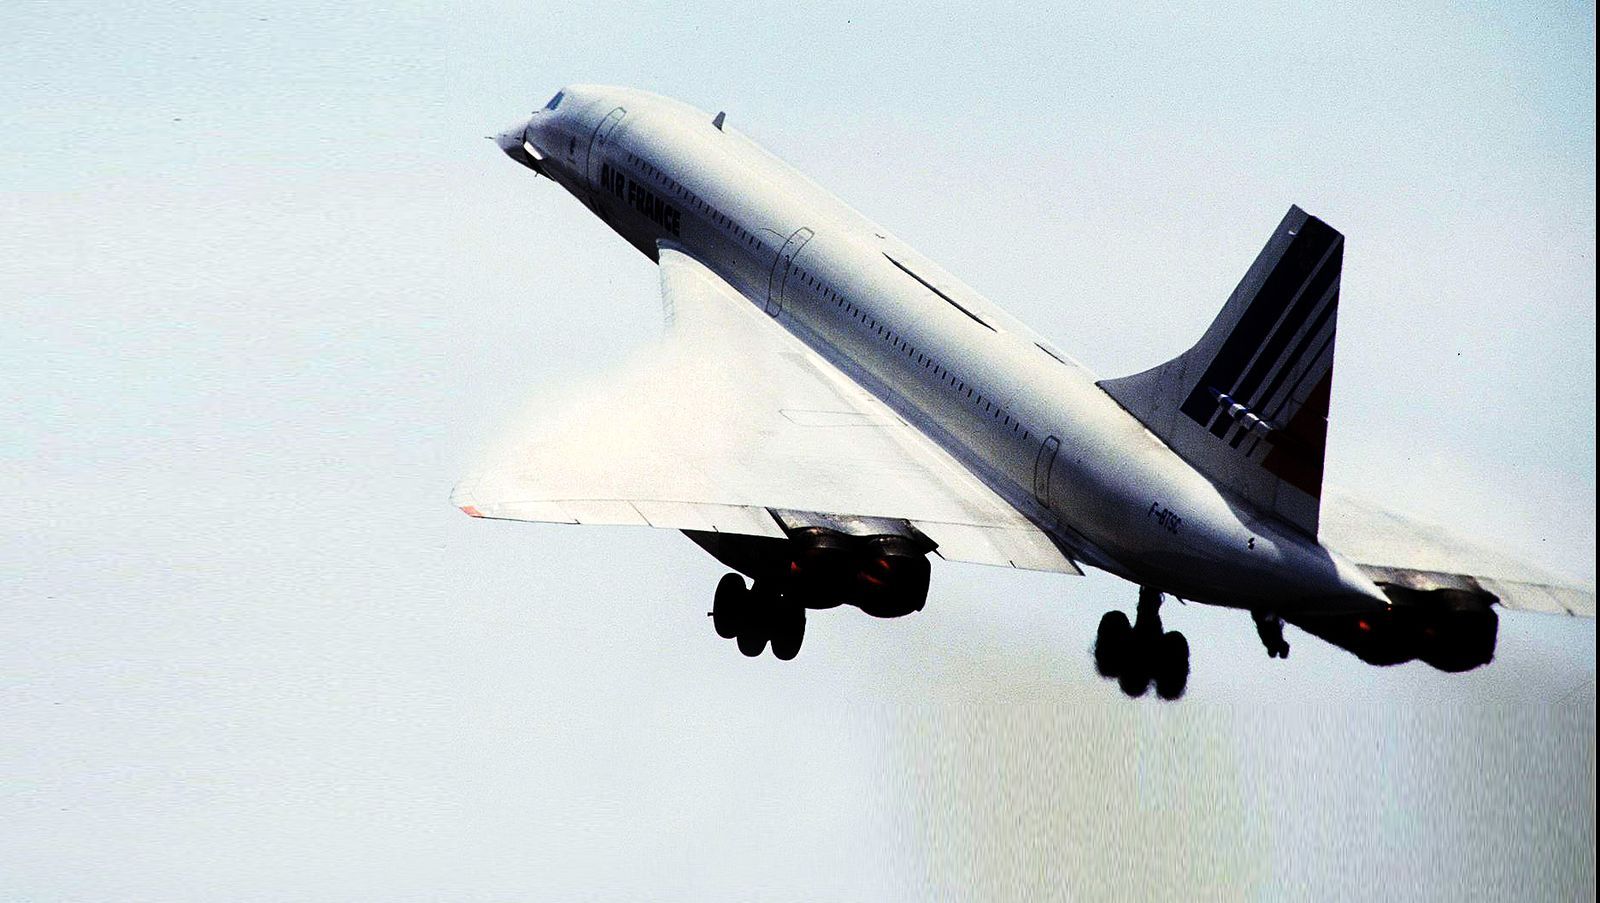 なぜコンコルド The Concorde は厄介な旅客機なのか 超音速飛行をめぐる波瀾万丈の物語